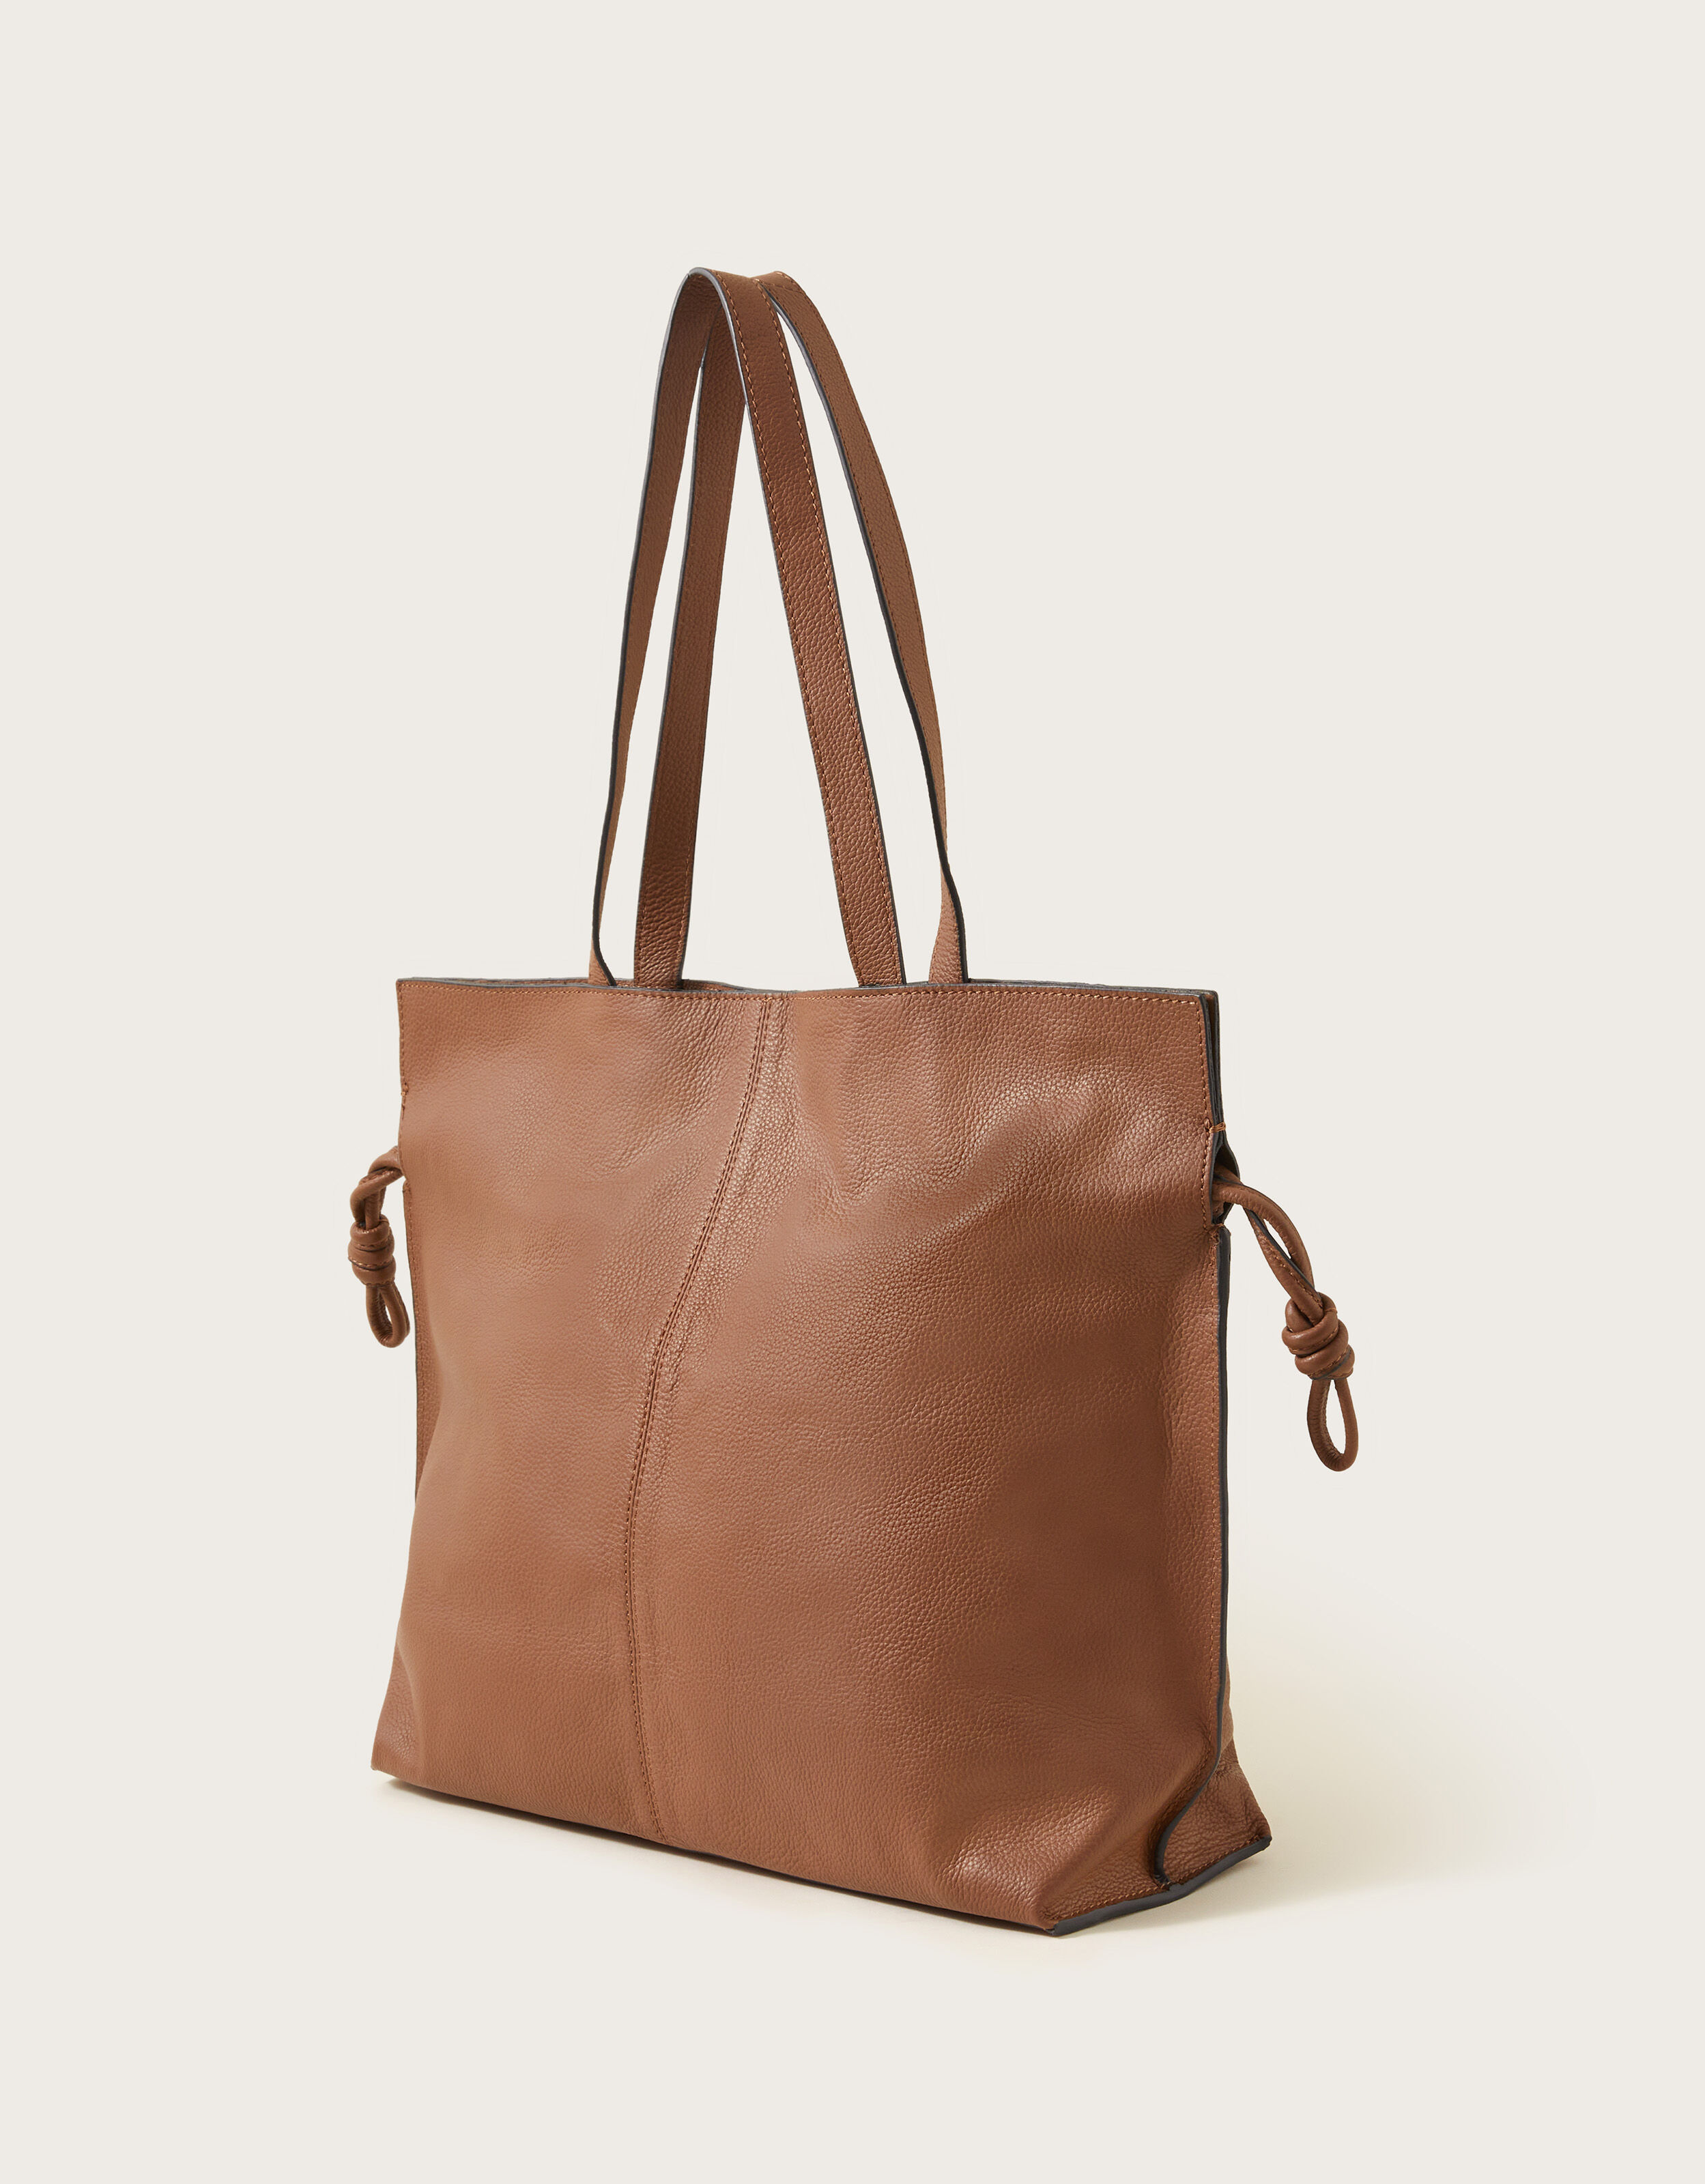 Tote Bags for Women, Large Leather Tote Bag with Zipper, Shoulder/Crossbody/ Handbag for Travel/Work, Khaki price in Saudi Arabia | Amazon Saudi Arabia  | kanbkam